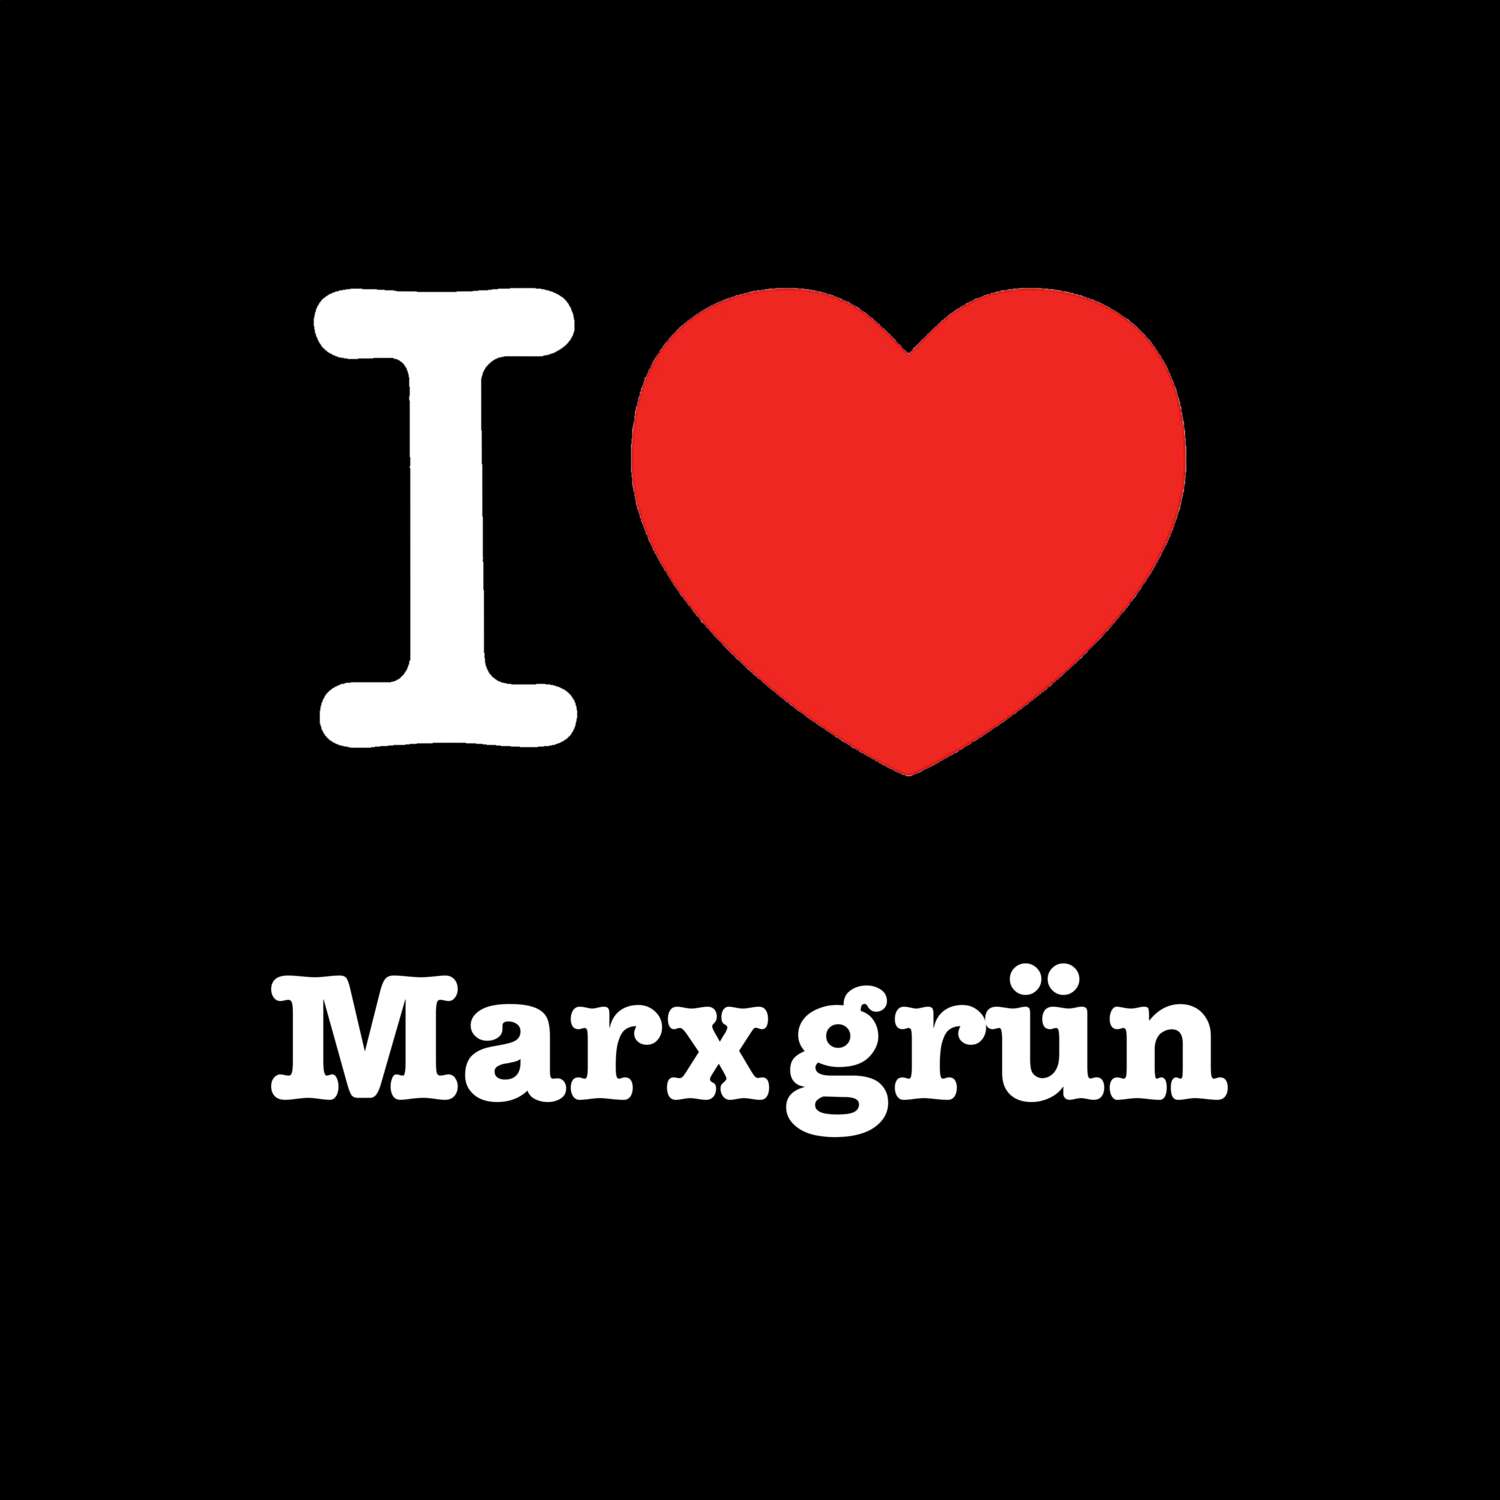 Marxgrün T-Shirt »I love«